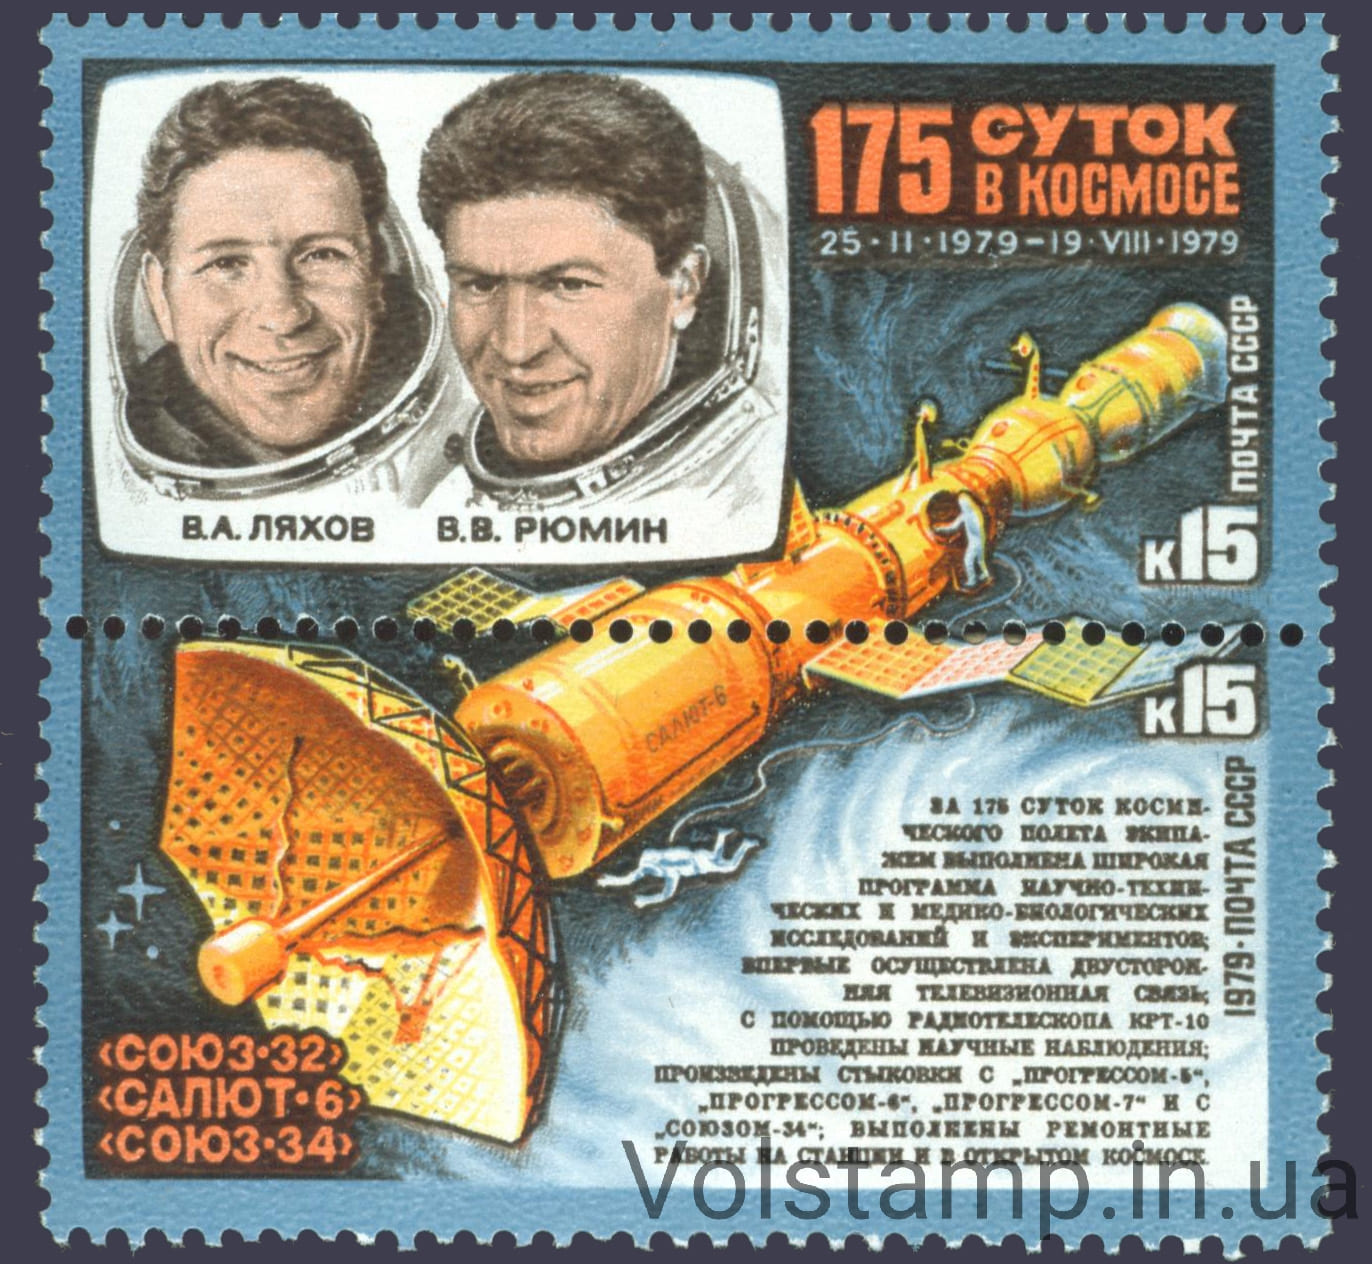 1979 сцепка Исследования на орбитальном космическом комплексе Союз-32 - Салют-6 - Союз-34 №4939-4940